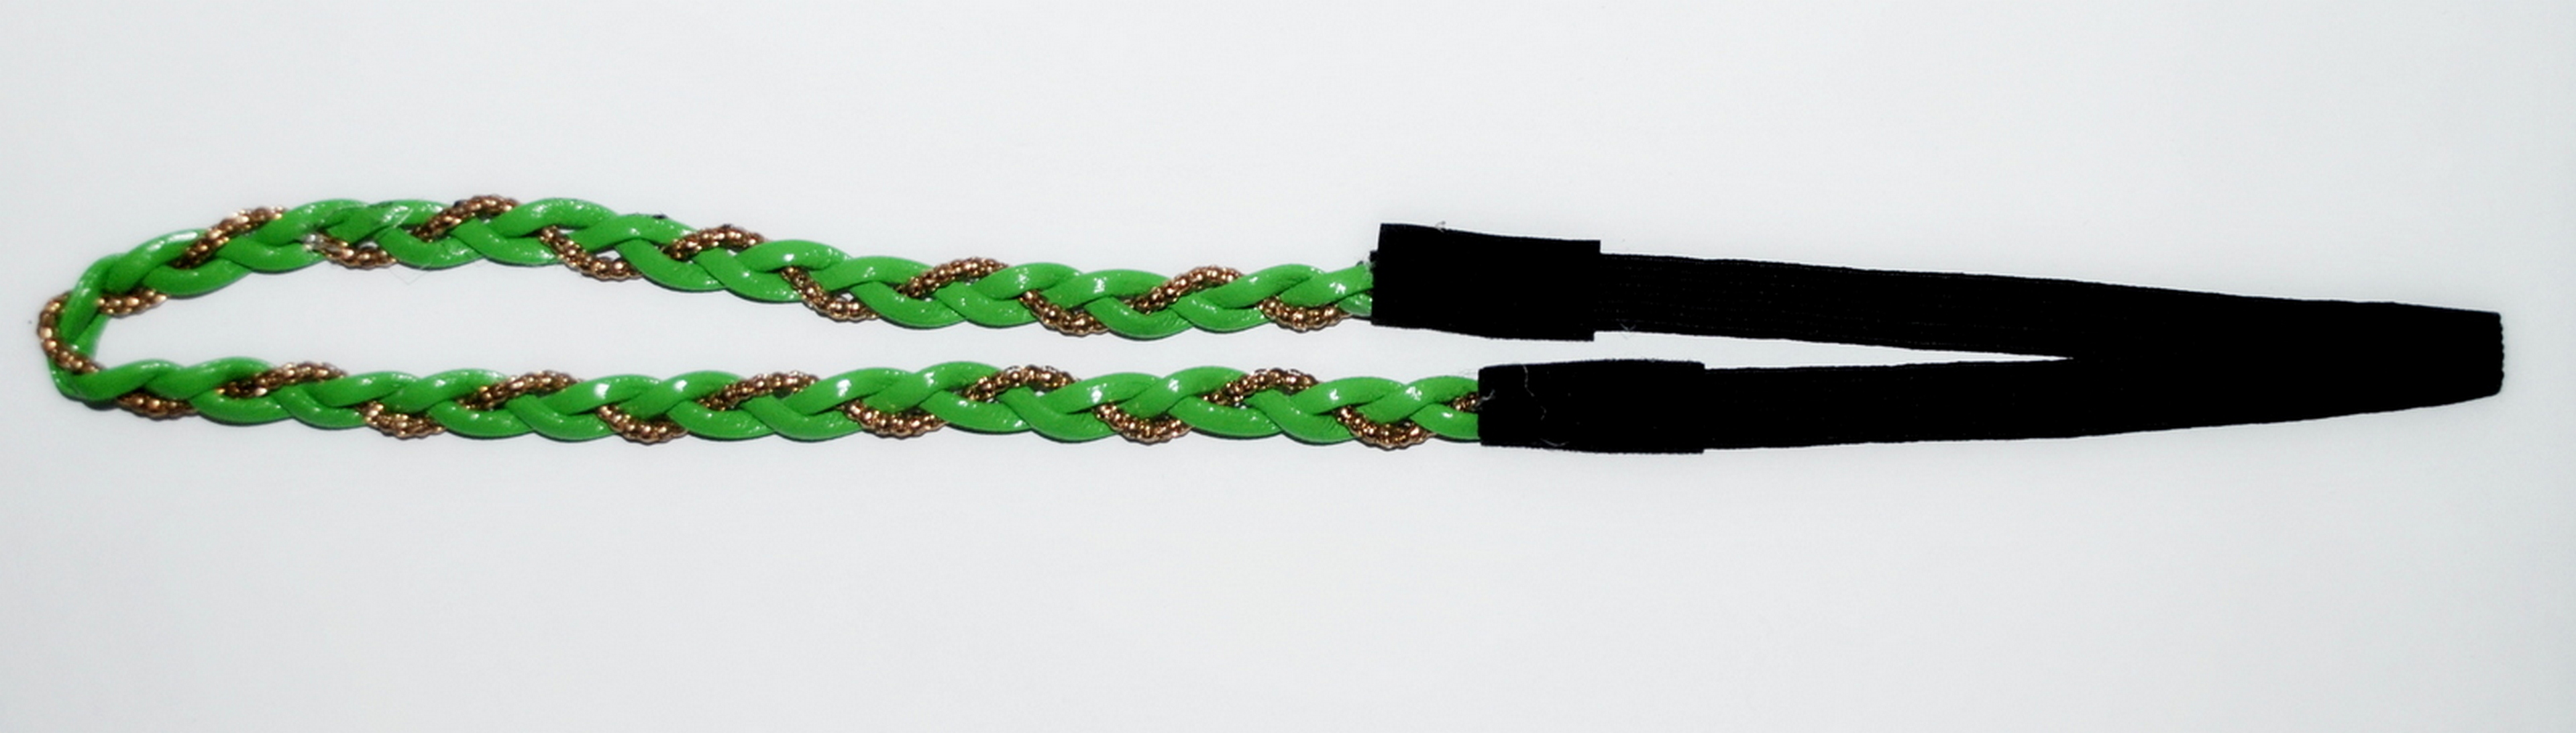 Повязка для волос Fashion Jewelry зеленая с золотой нитью